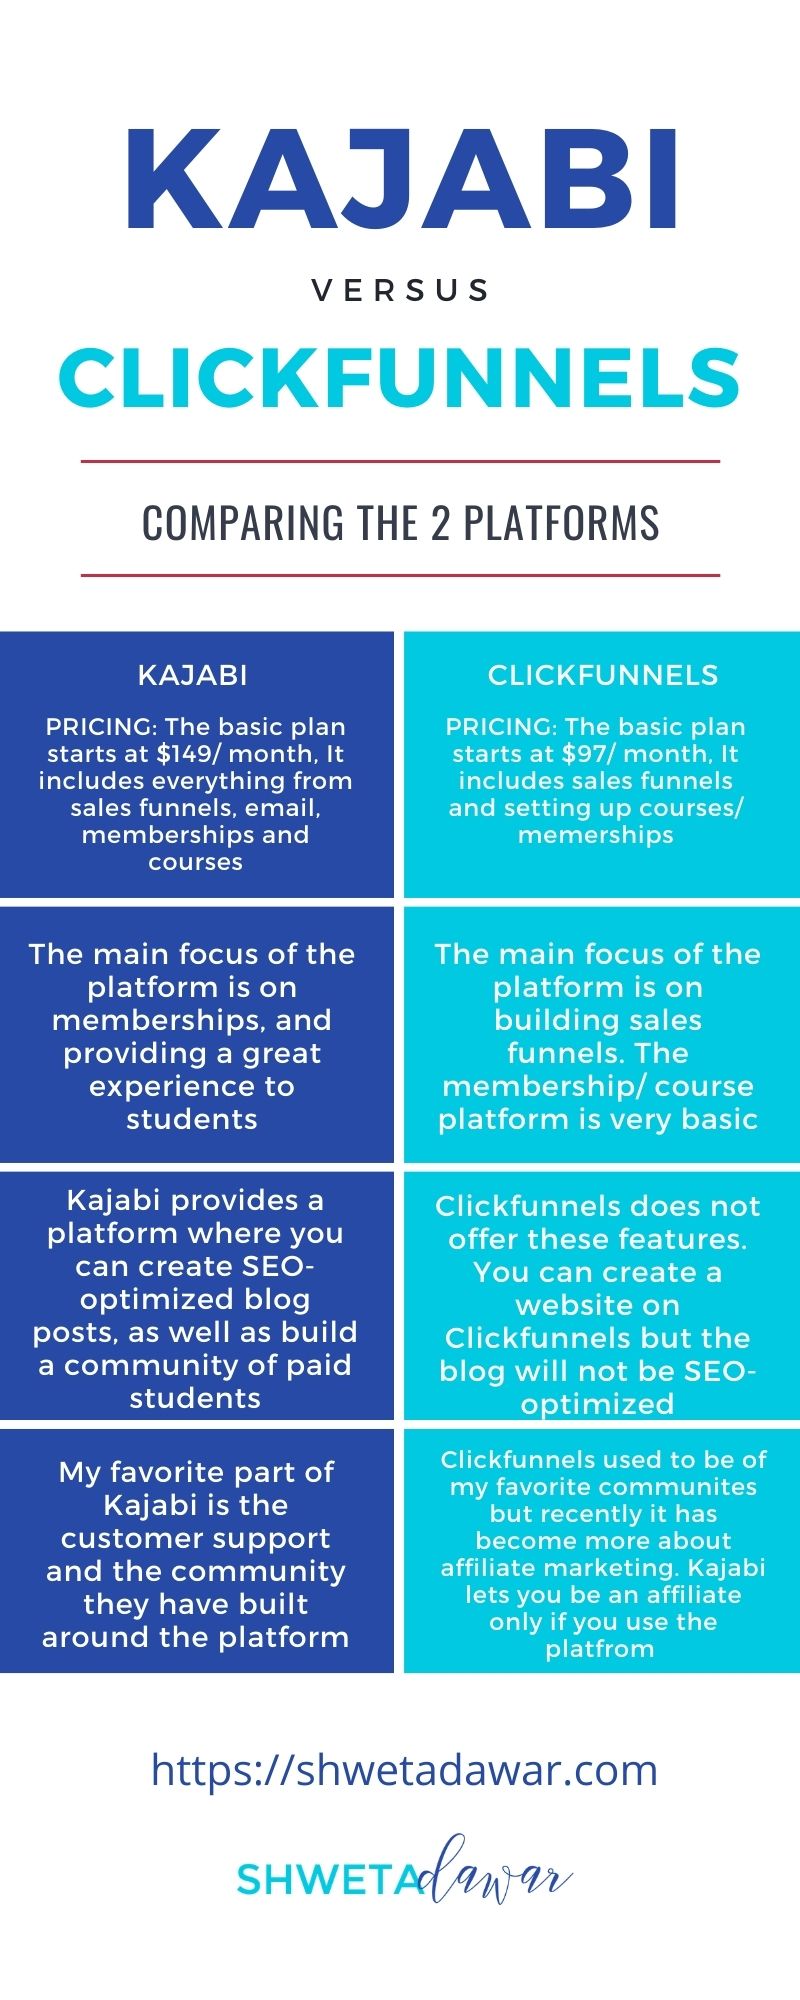 Kajabi vs Clickfunnels